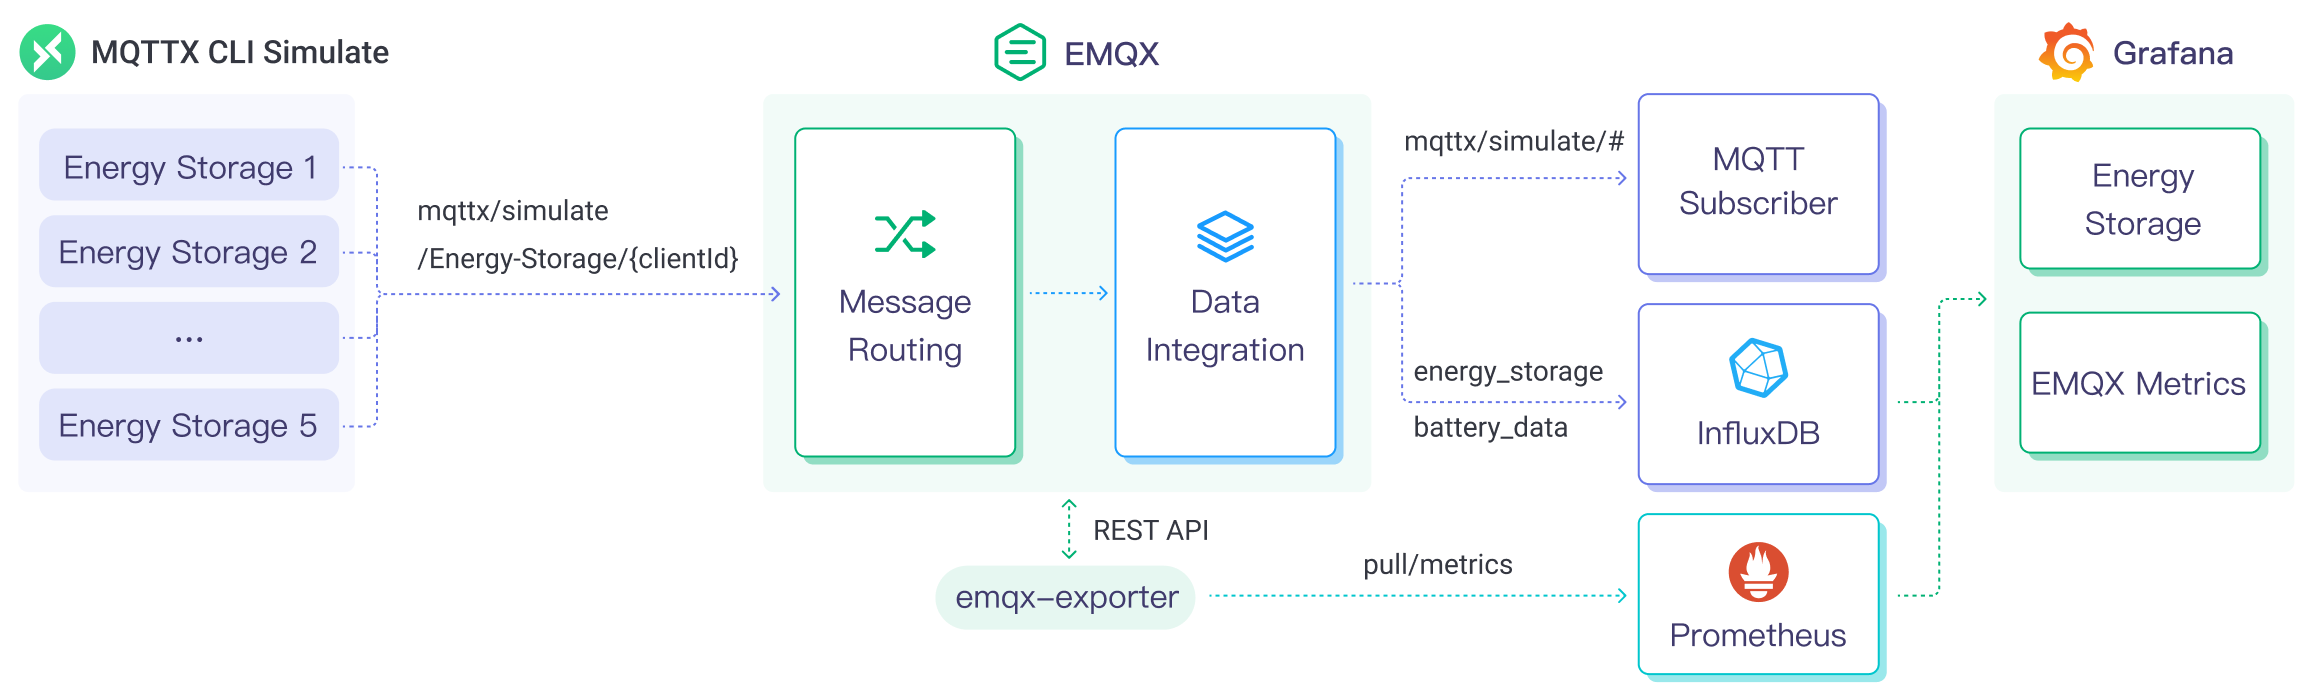 EMQX Platform InfluxDB Data Integration